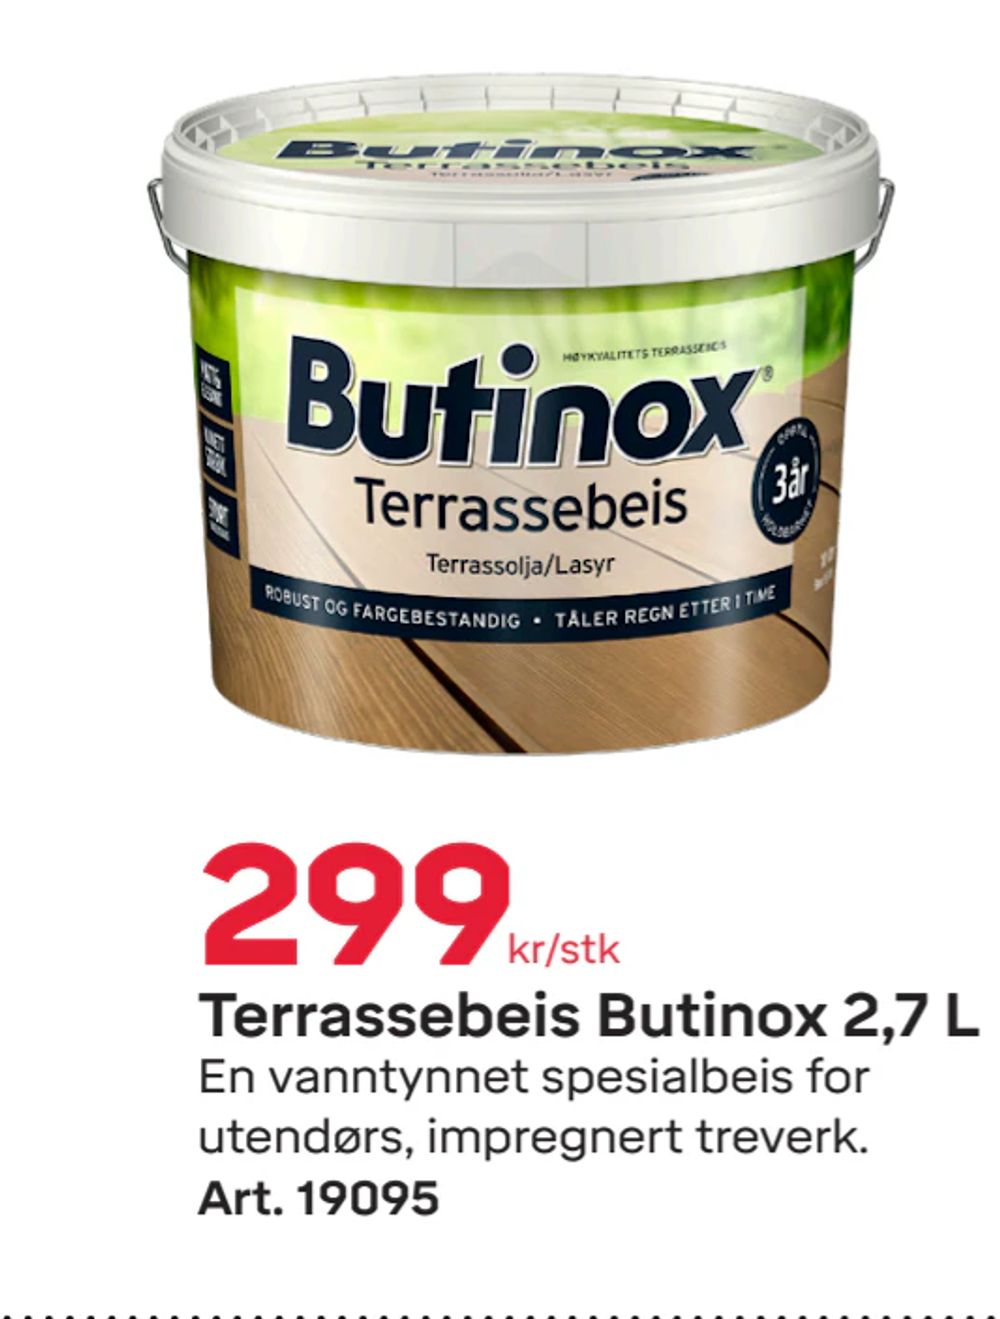 Tilbud på Terrassebeis Butinox 2,7 L fra Byggmax til 299 kr